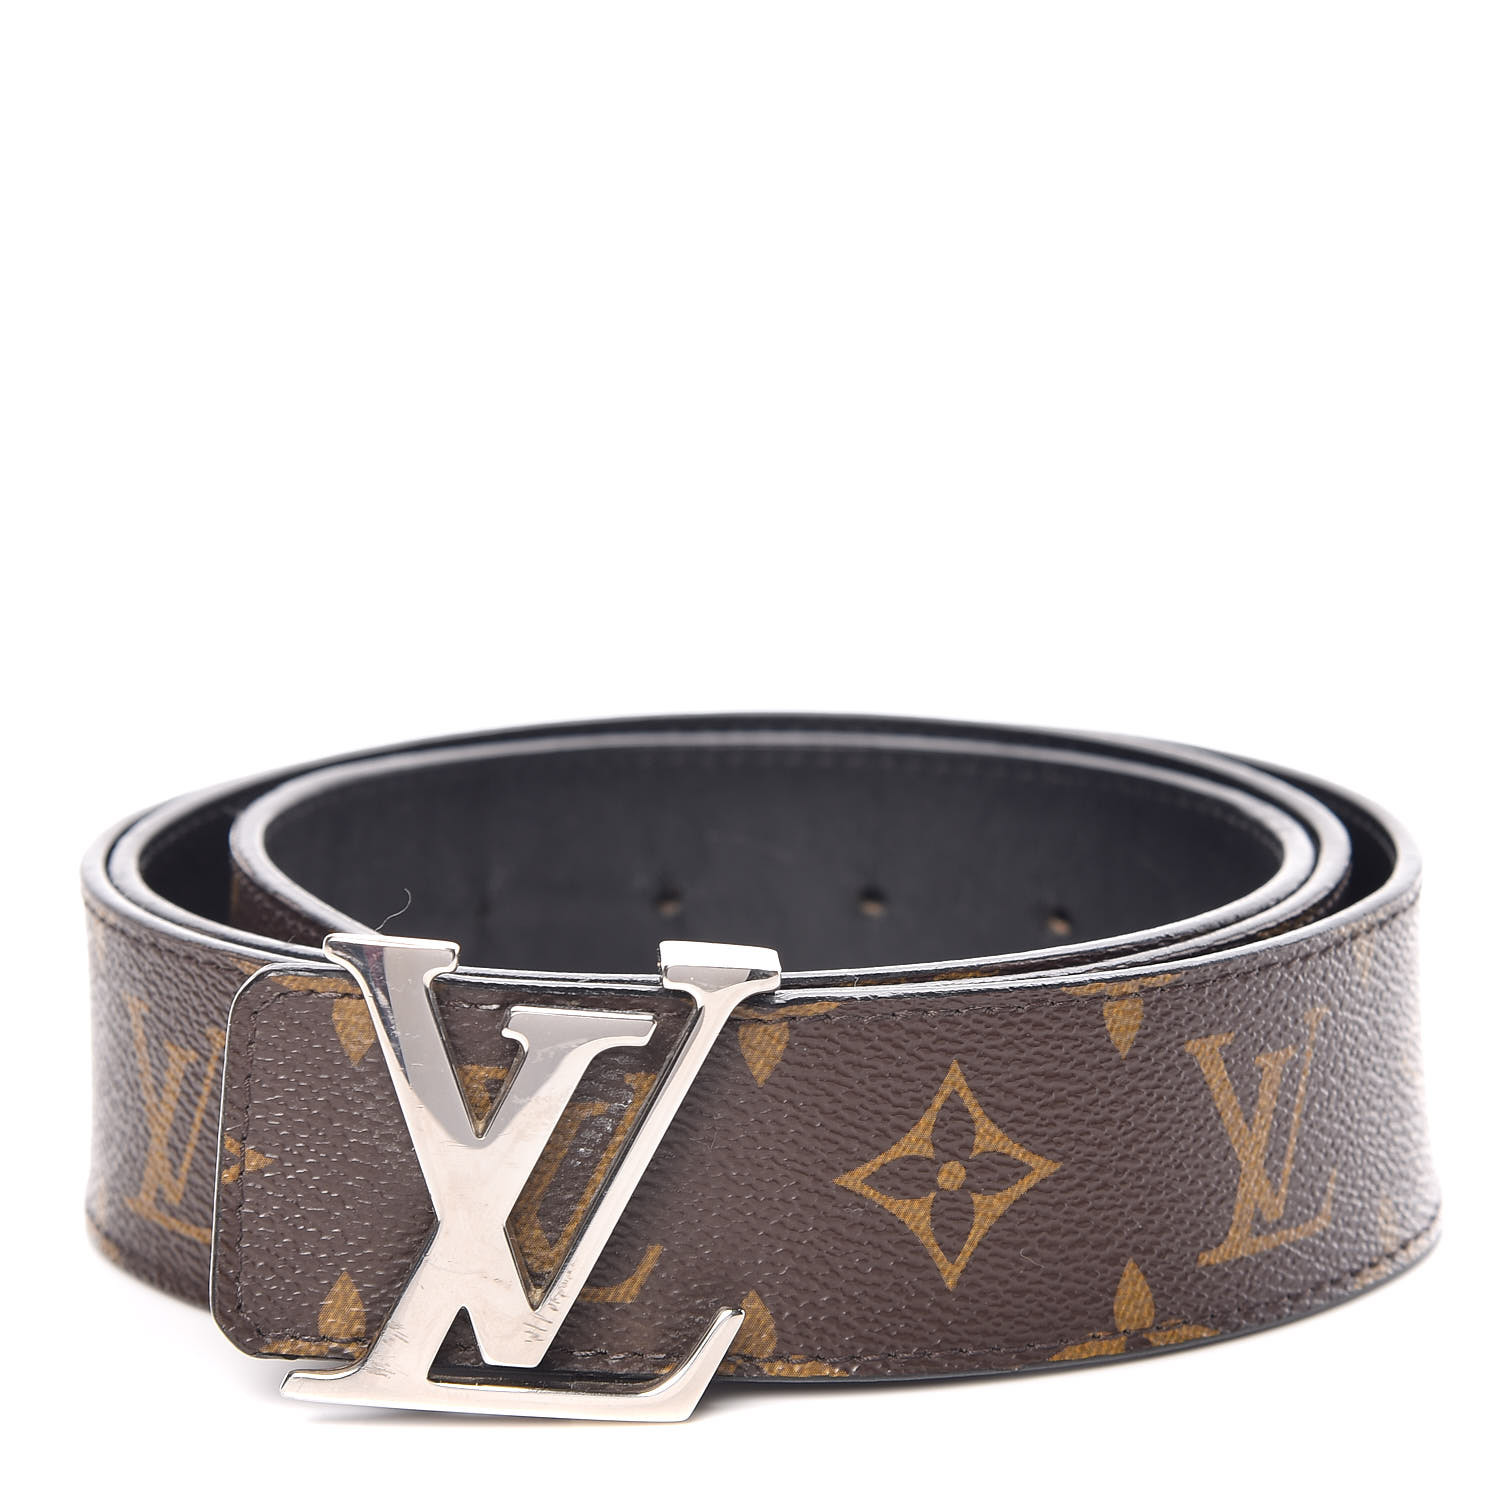 How To Style A Louis Vuitton Belt | Walden Wong